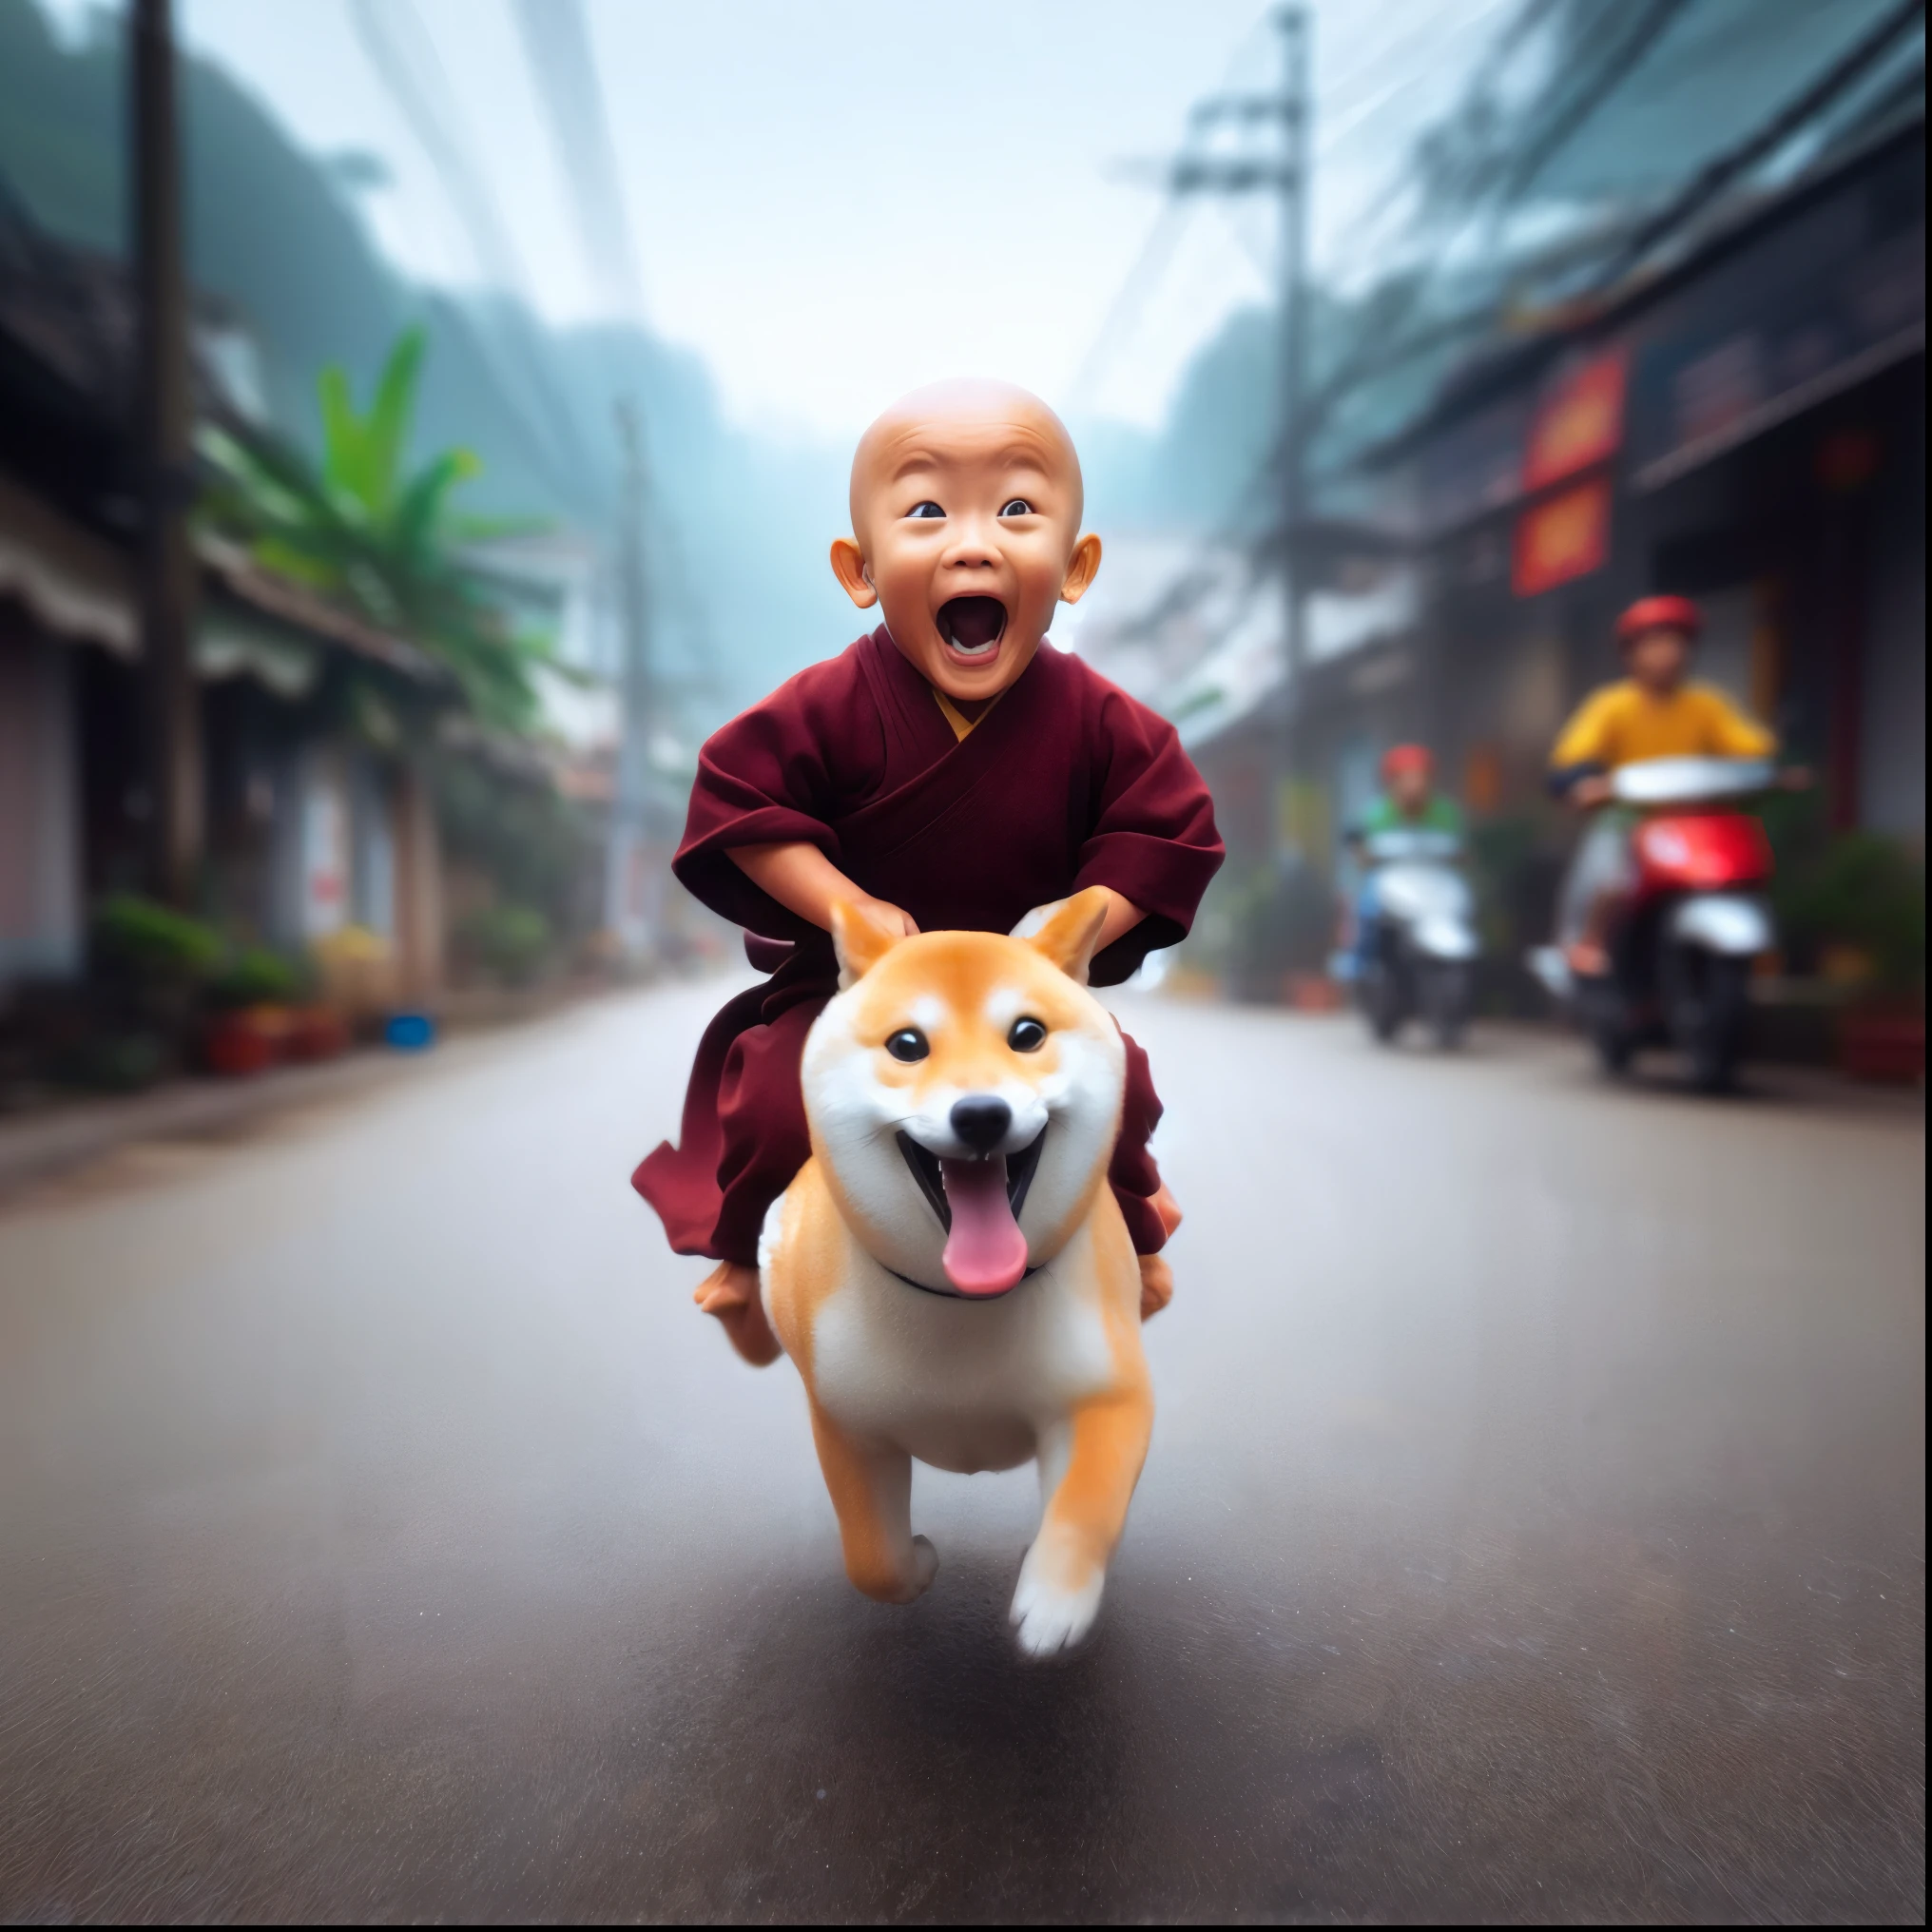 Arafed-Bild eines Mönchs, der auf einer Straße auf einem Hund reitet, Buddhist, Hund als Gott, 2 Mönch aus dem 1. Jahrhundert, erstaunliche Tiefe, doge, Buddhismus, Eindrucksvoll, mit seinem hyperaktiven kleinen Hund, artwork in the style of guweiz, entzückende digitale Malerei, monk, Er ist sehr glücklich, pure Freude, inspiriert von Shiba Kōkan